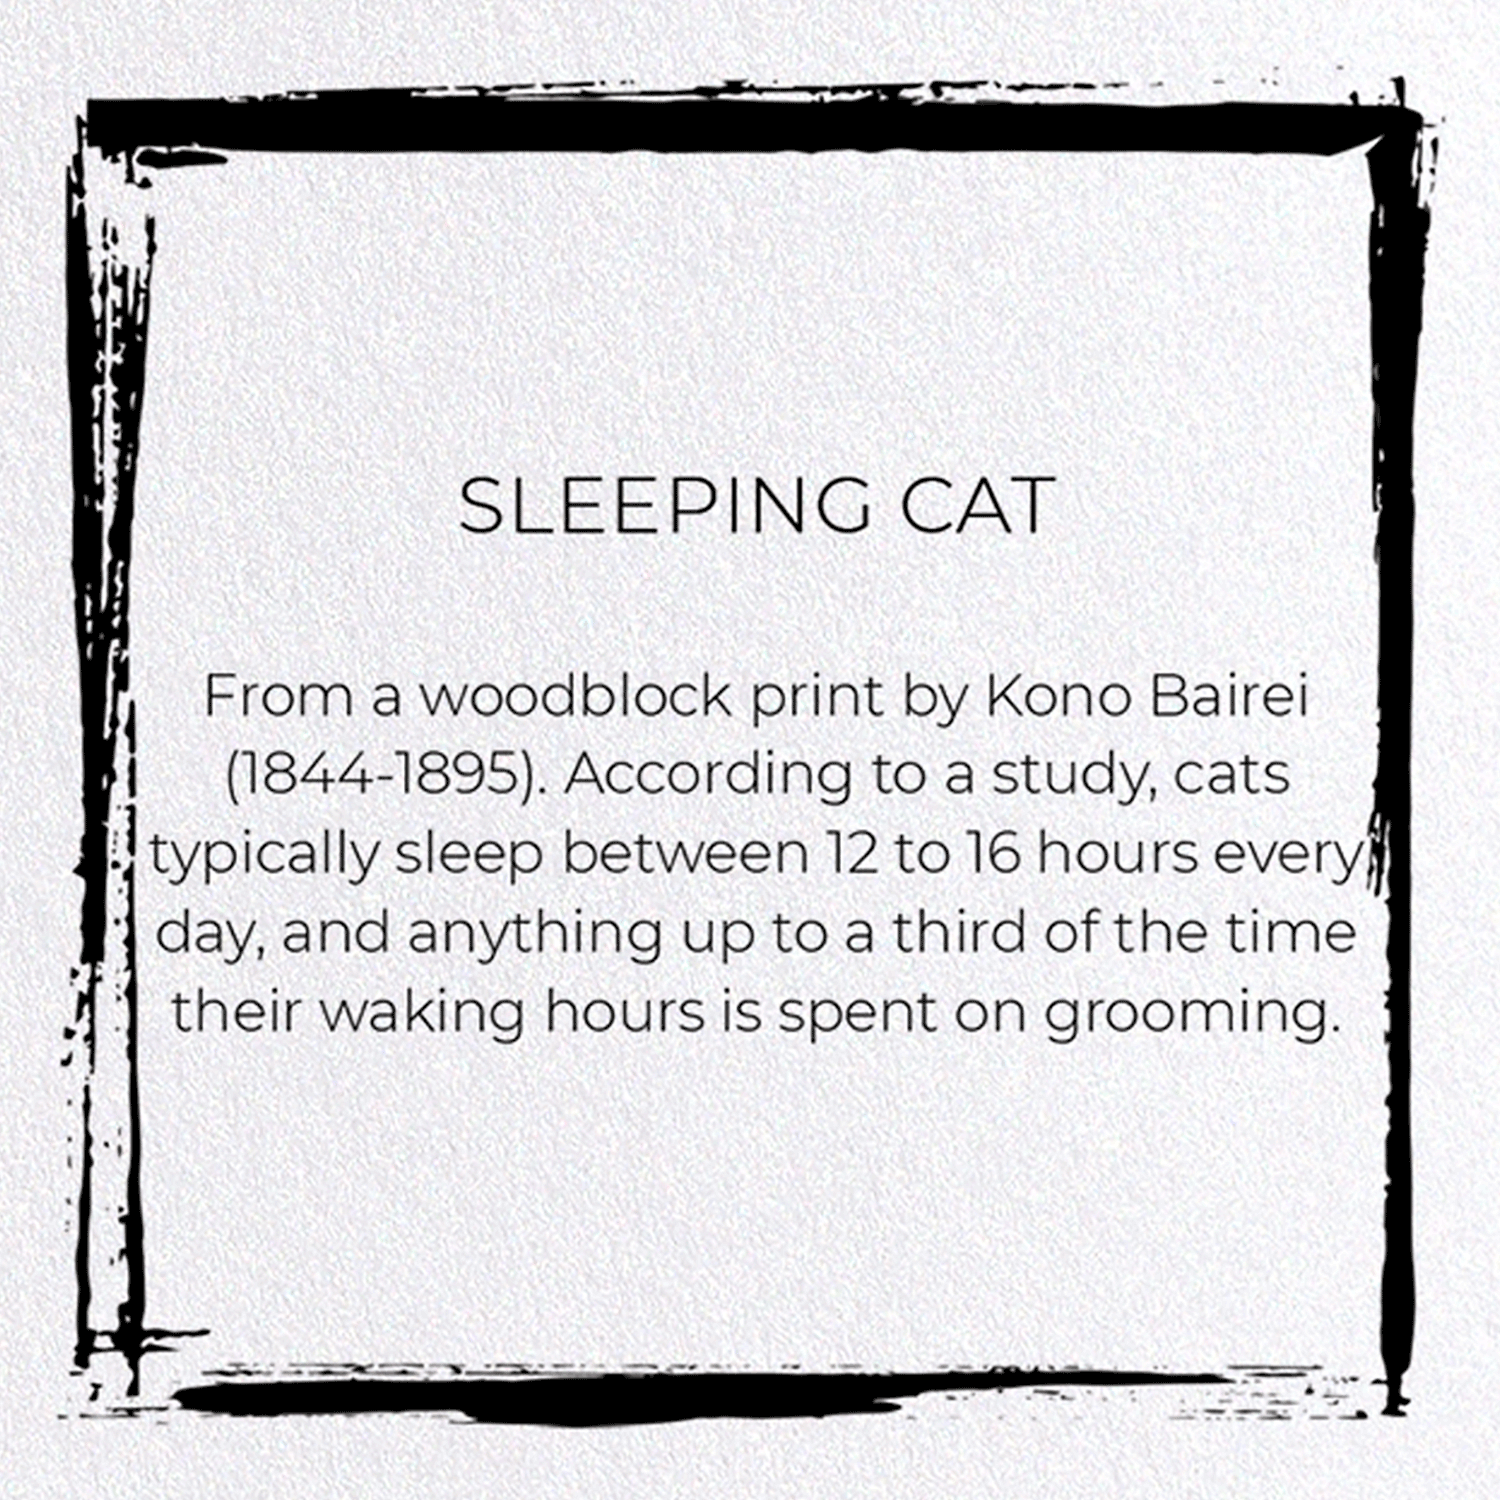 SLEEPING CAT